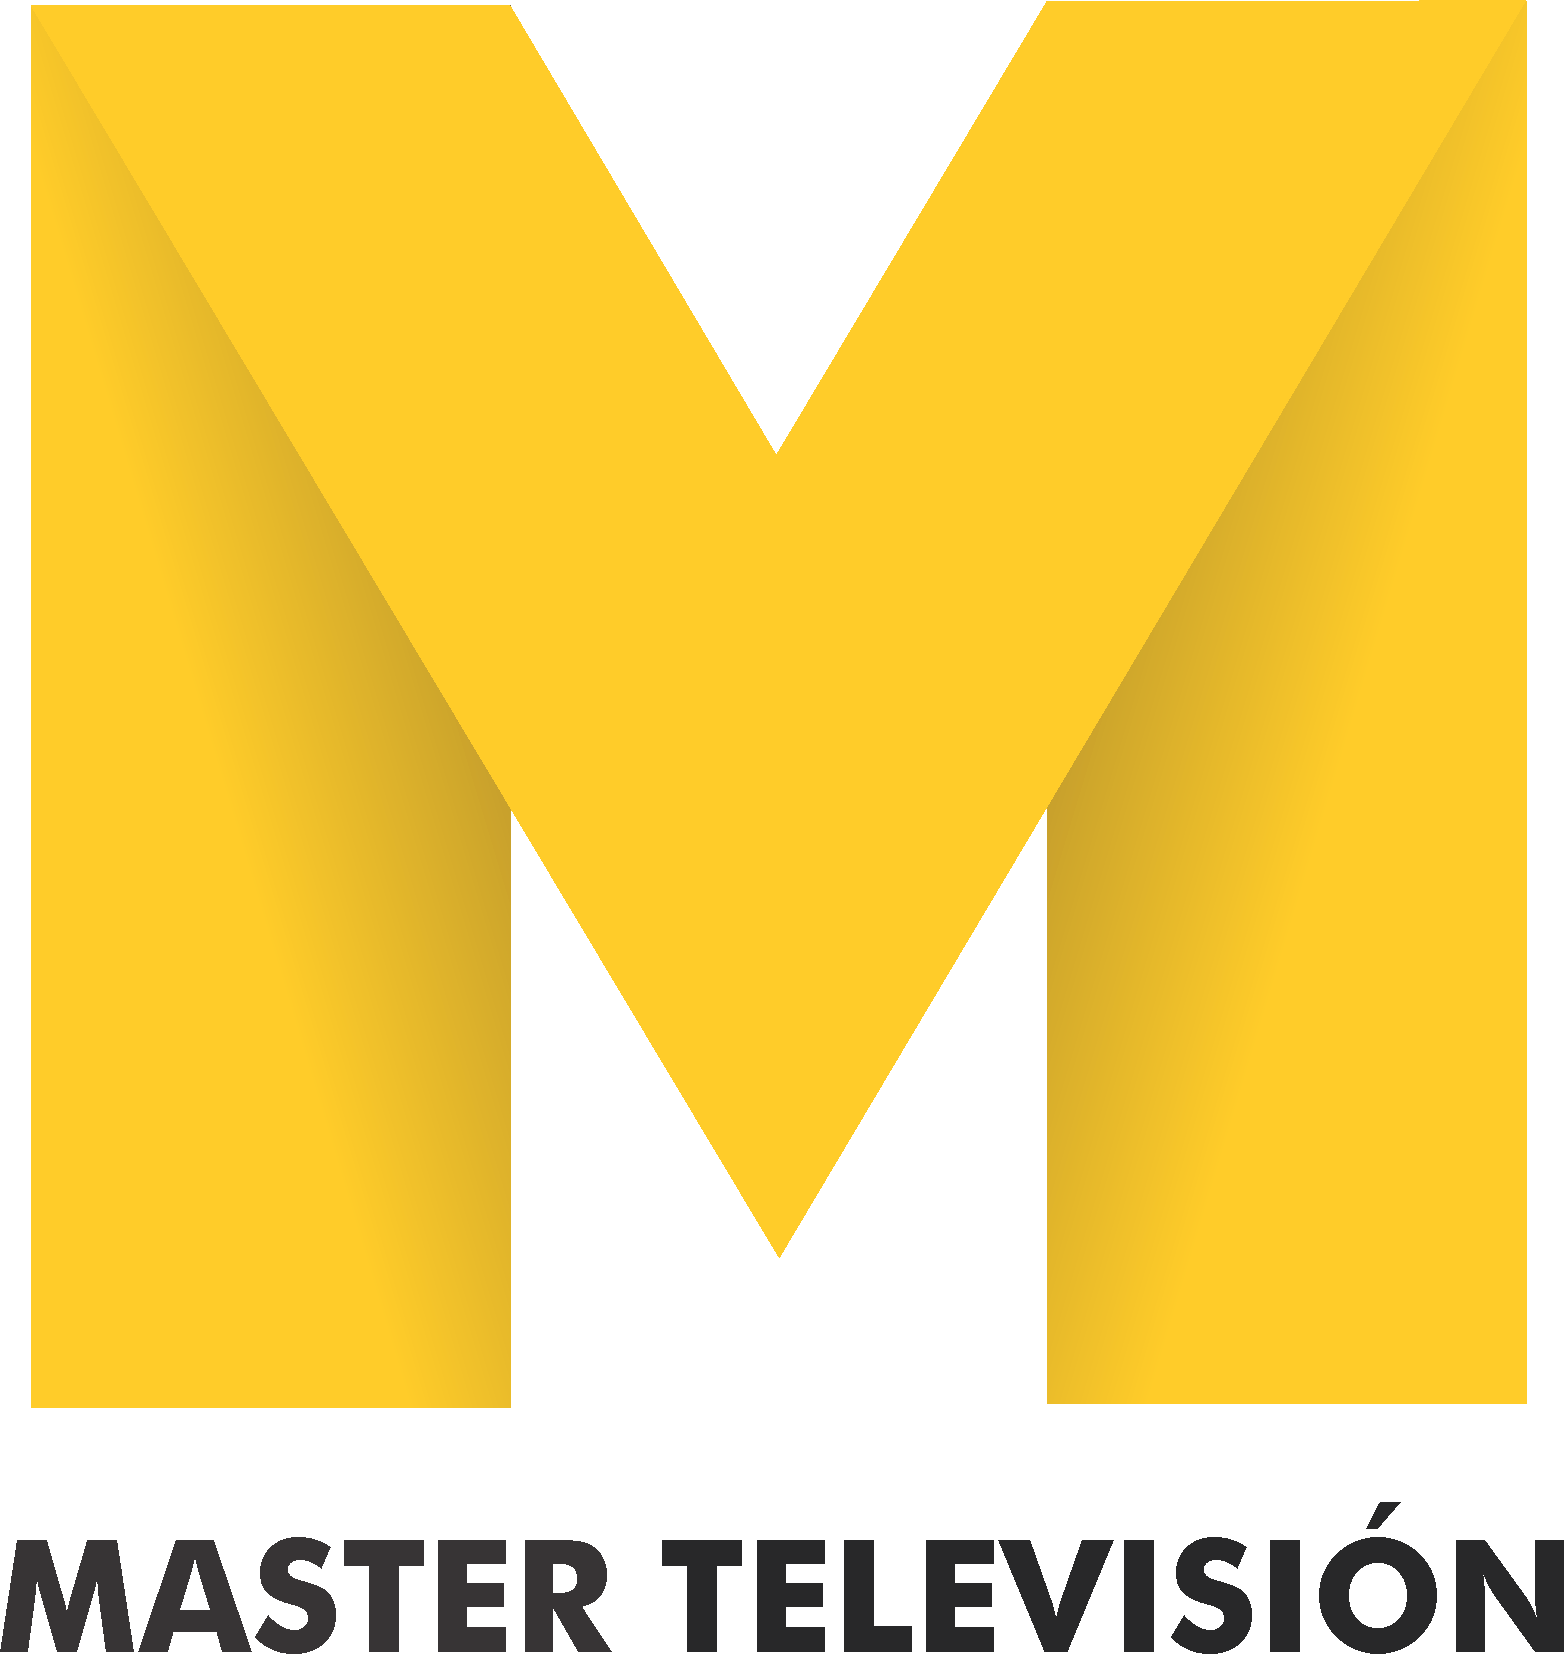 Profile Master Television Tarapoto Tv Channels